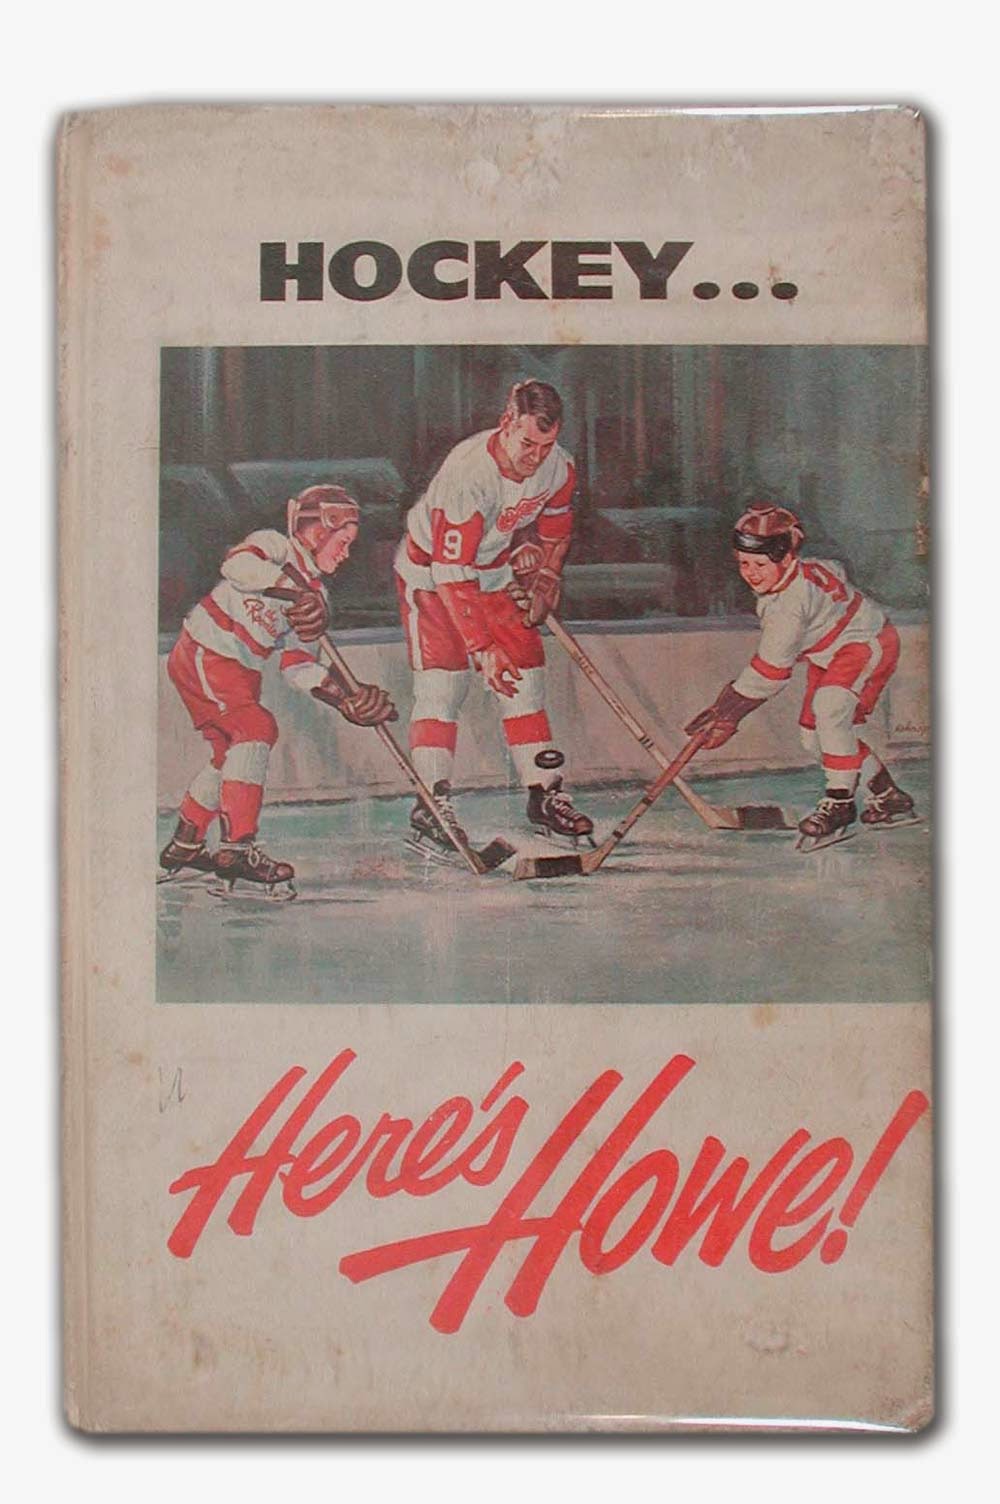 Gordie Howe embodied very best of hockey's sacred and profane